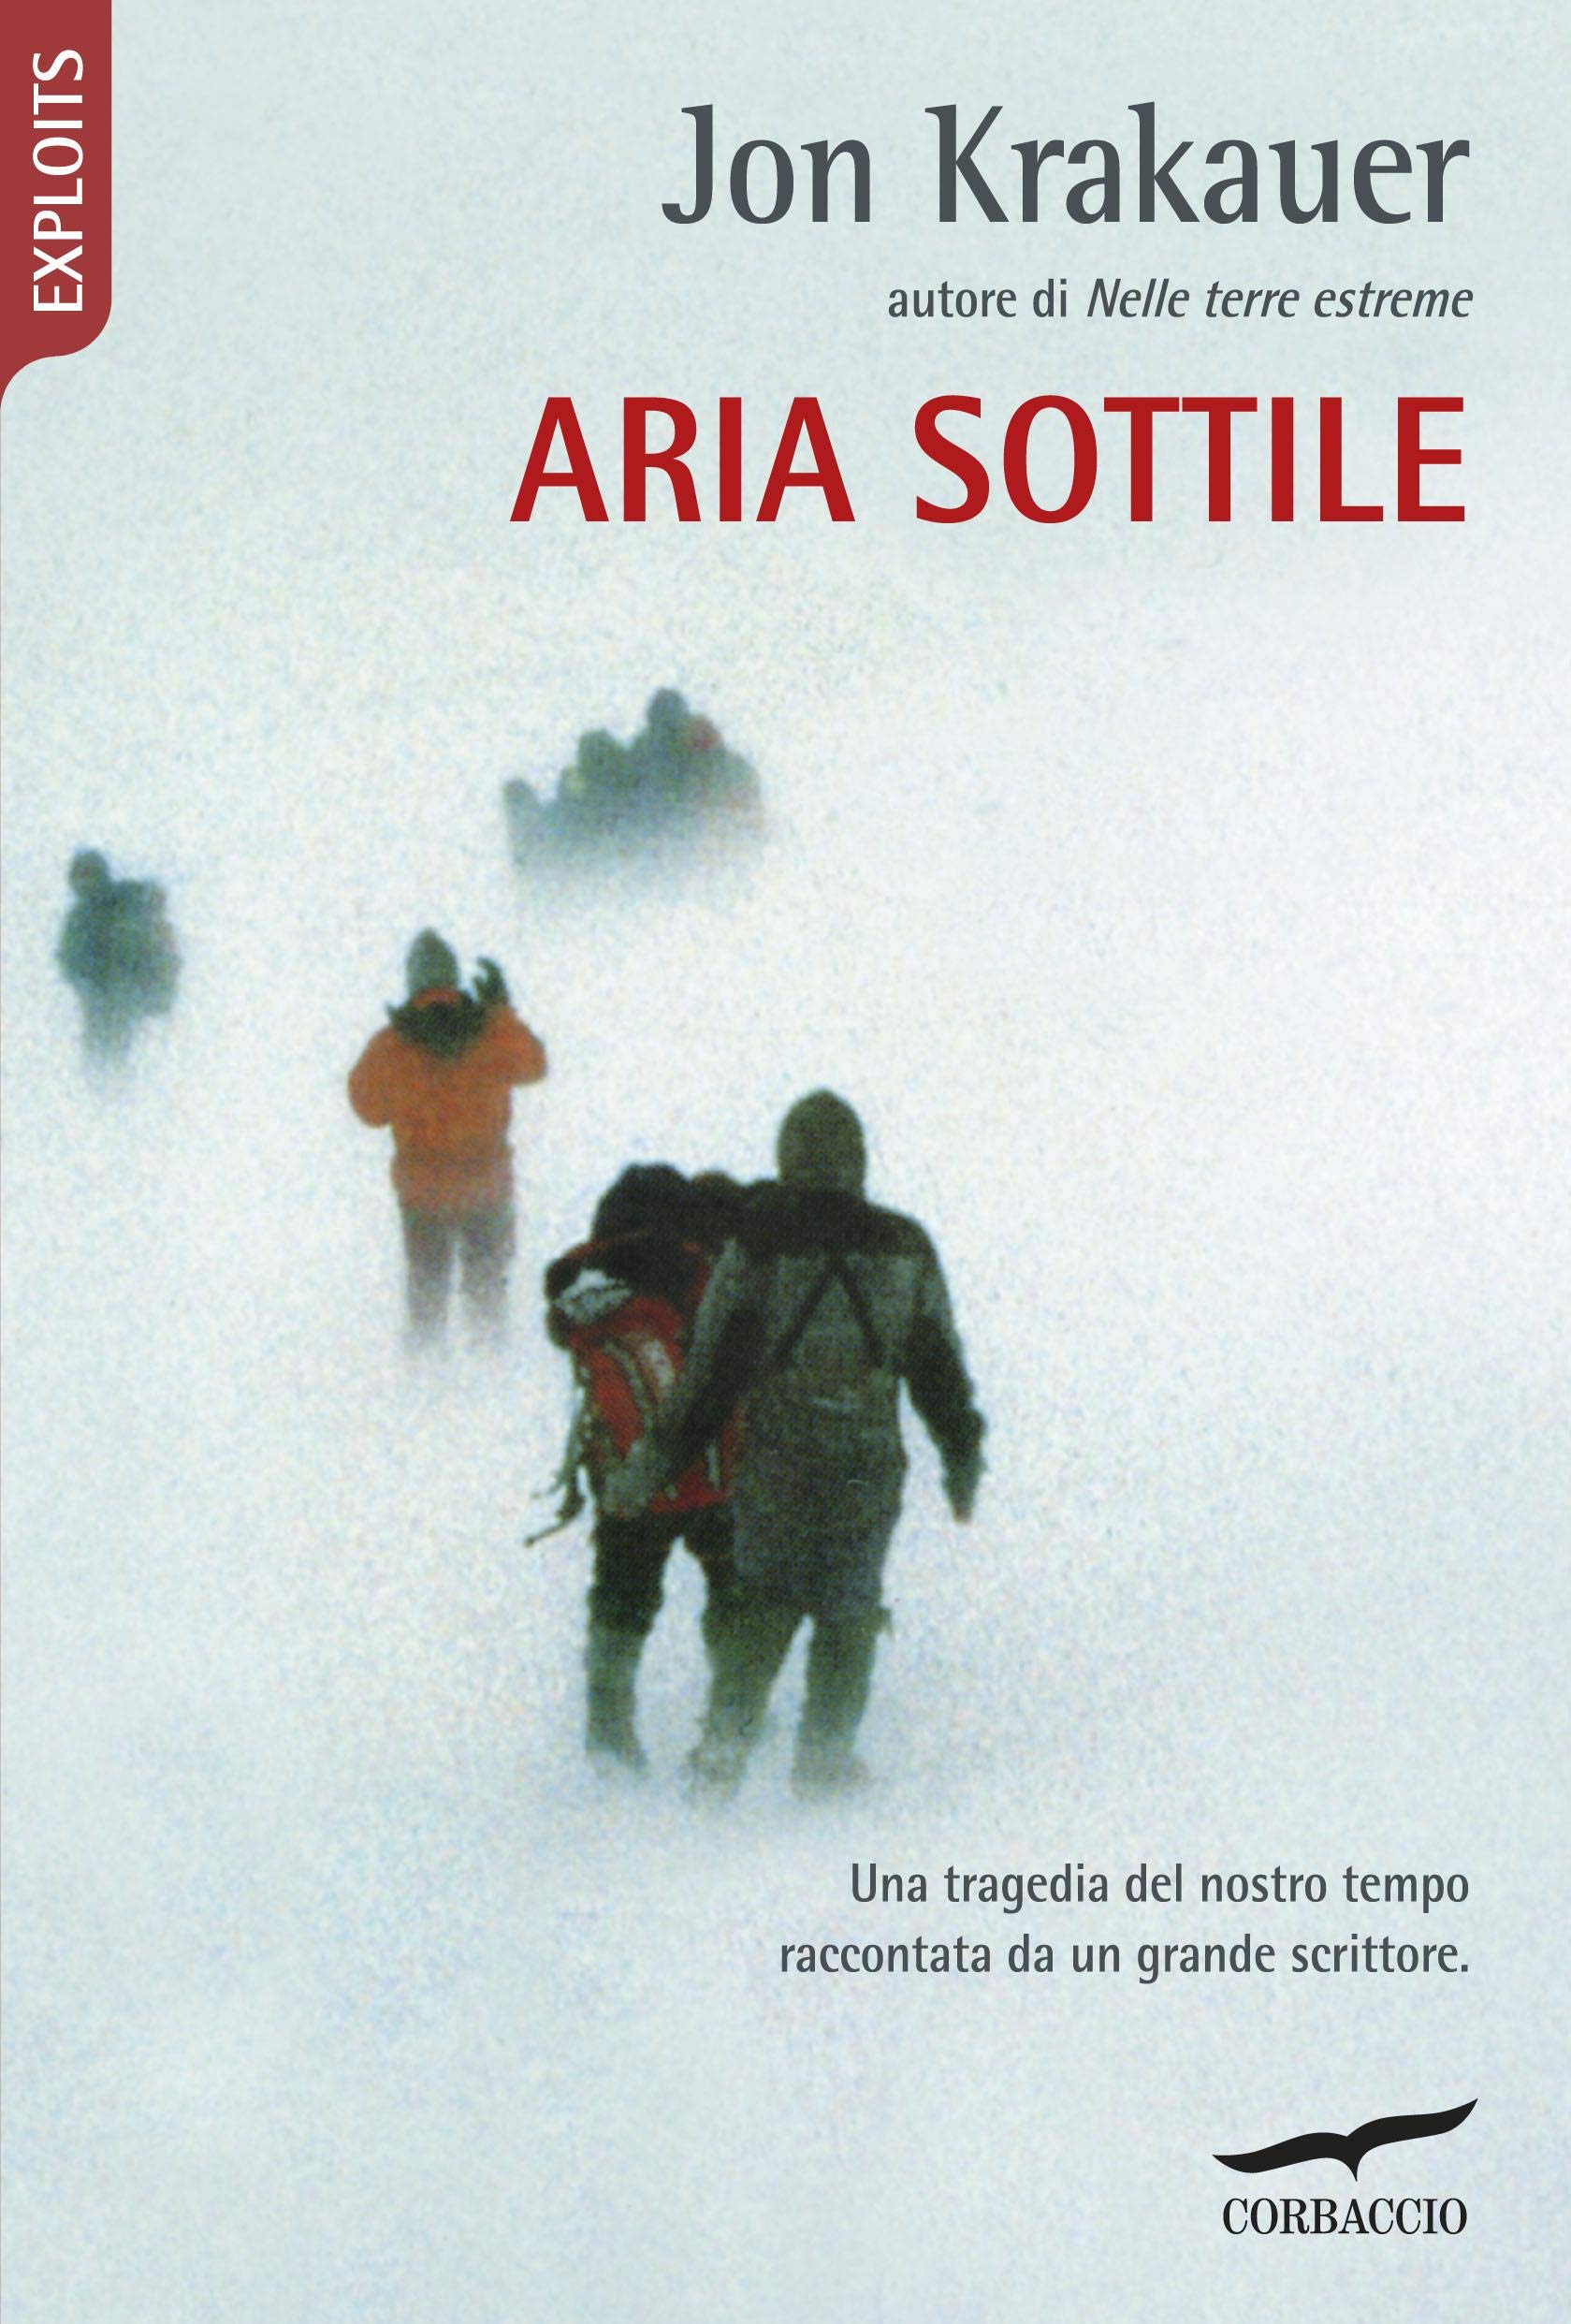 Aria sottile (Italian Edition)